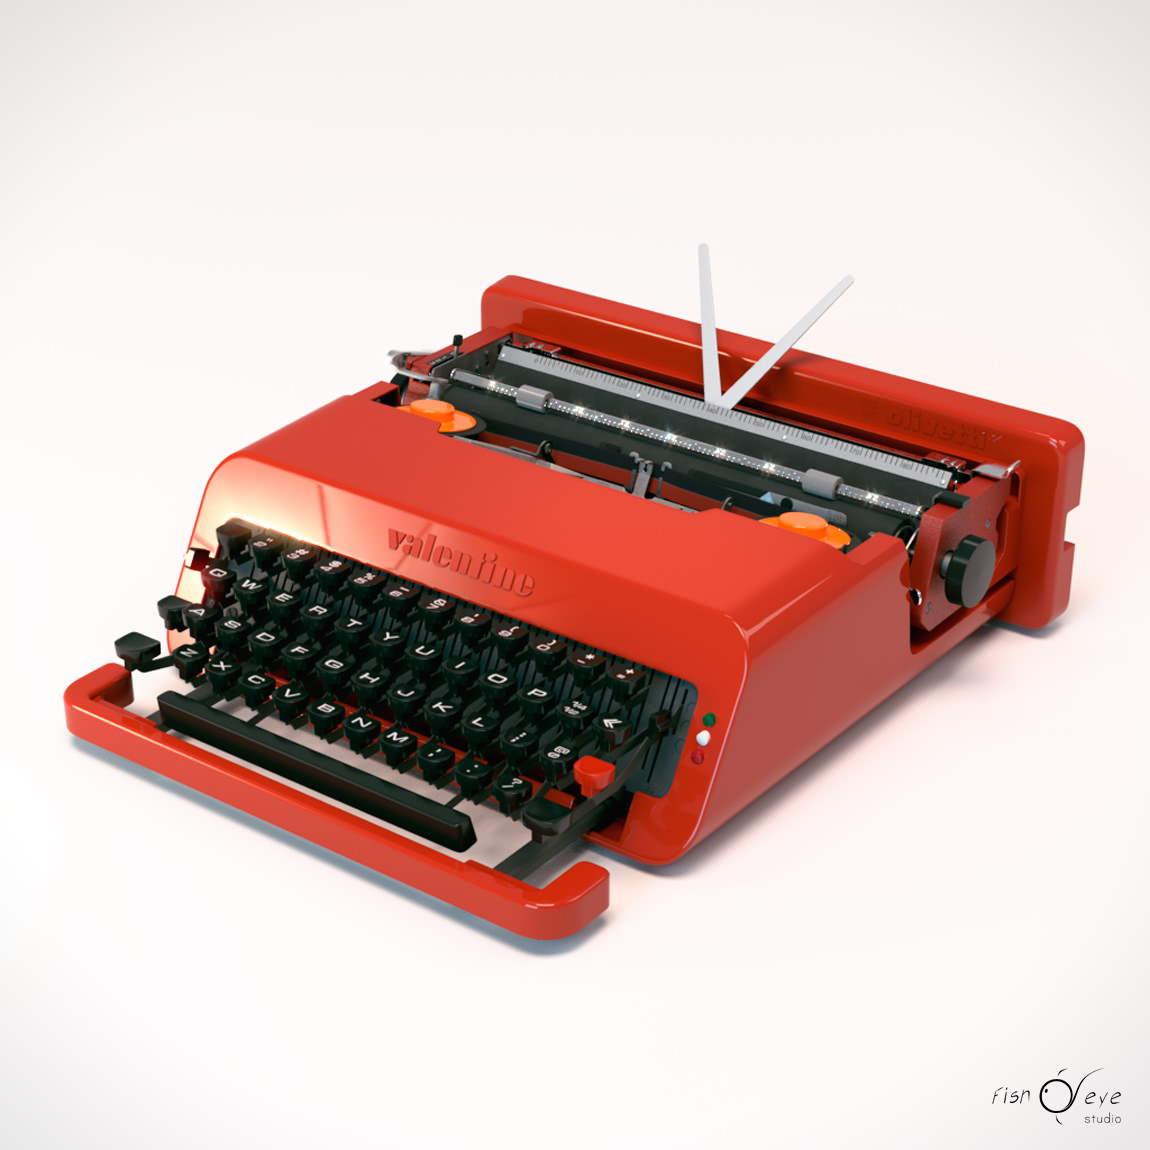 3D model of the Olivetti Valentine typewriter 04